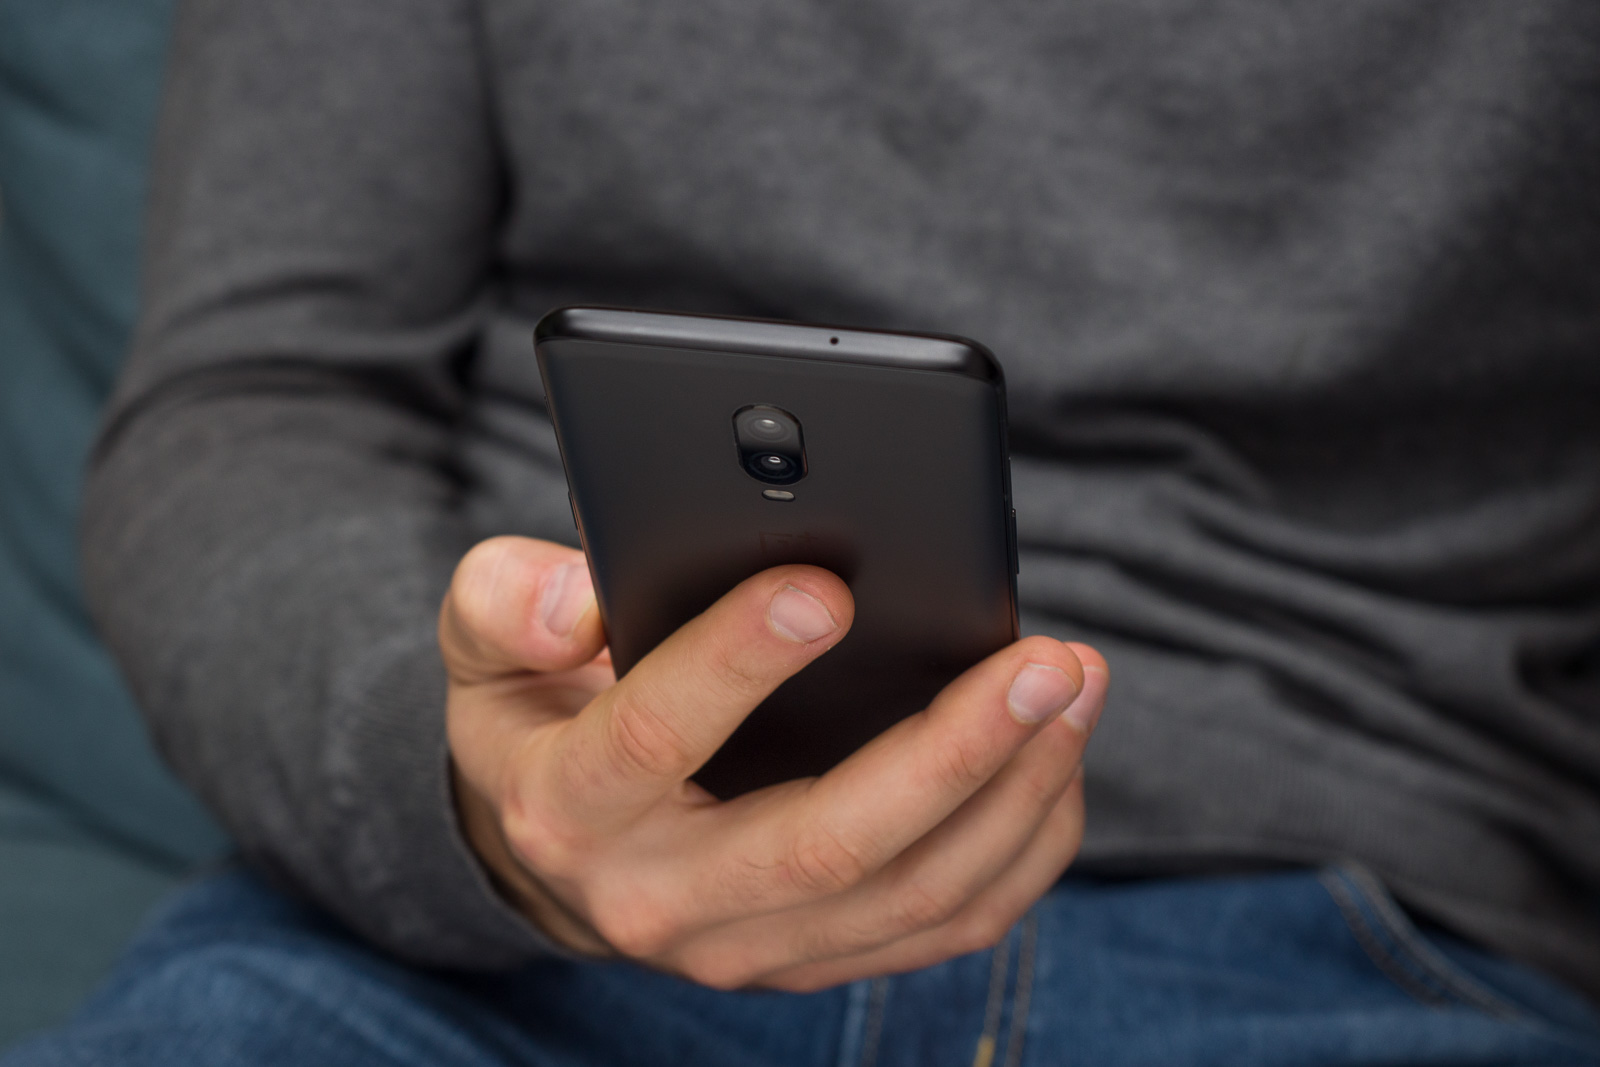 OnePlus 7 & 7 Pro detalhado extensivamente: armazenamento, bateria, câmeras, cores, muito mais